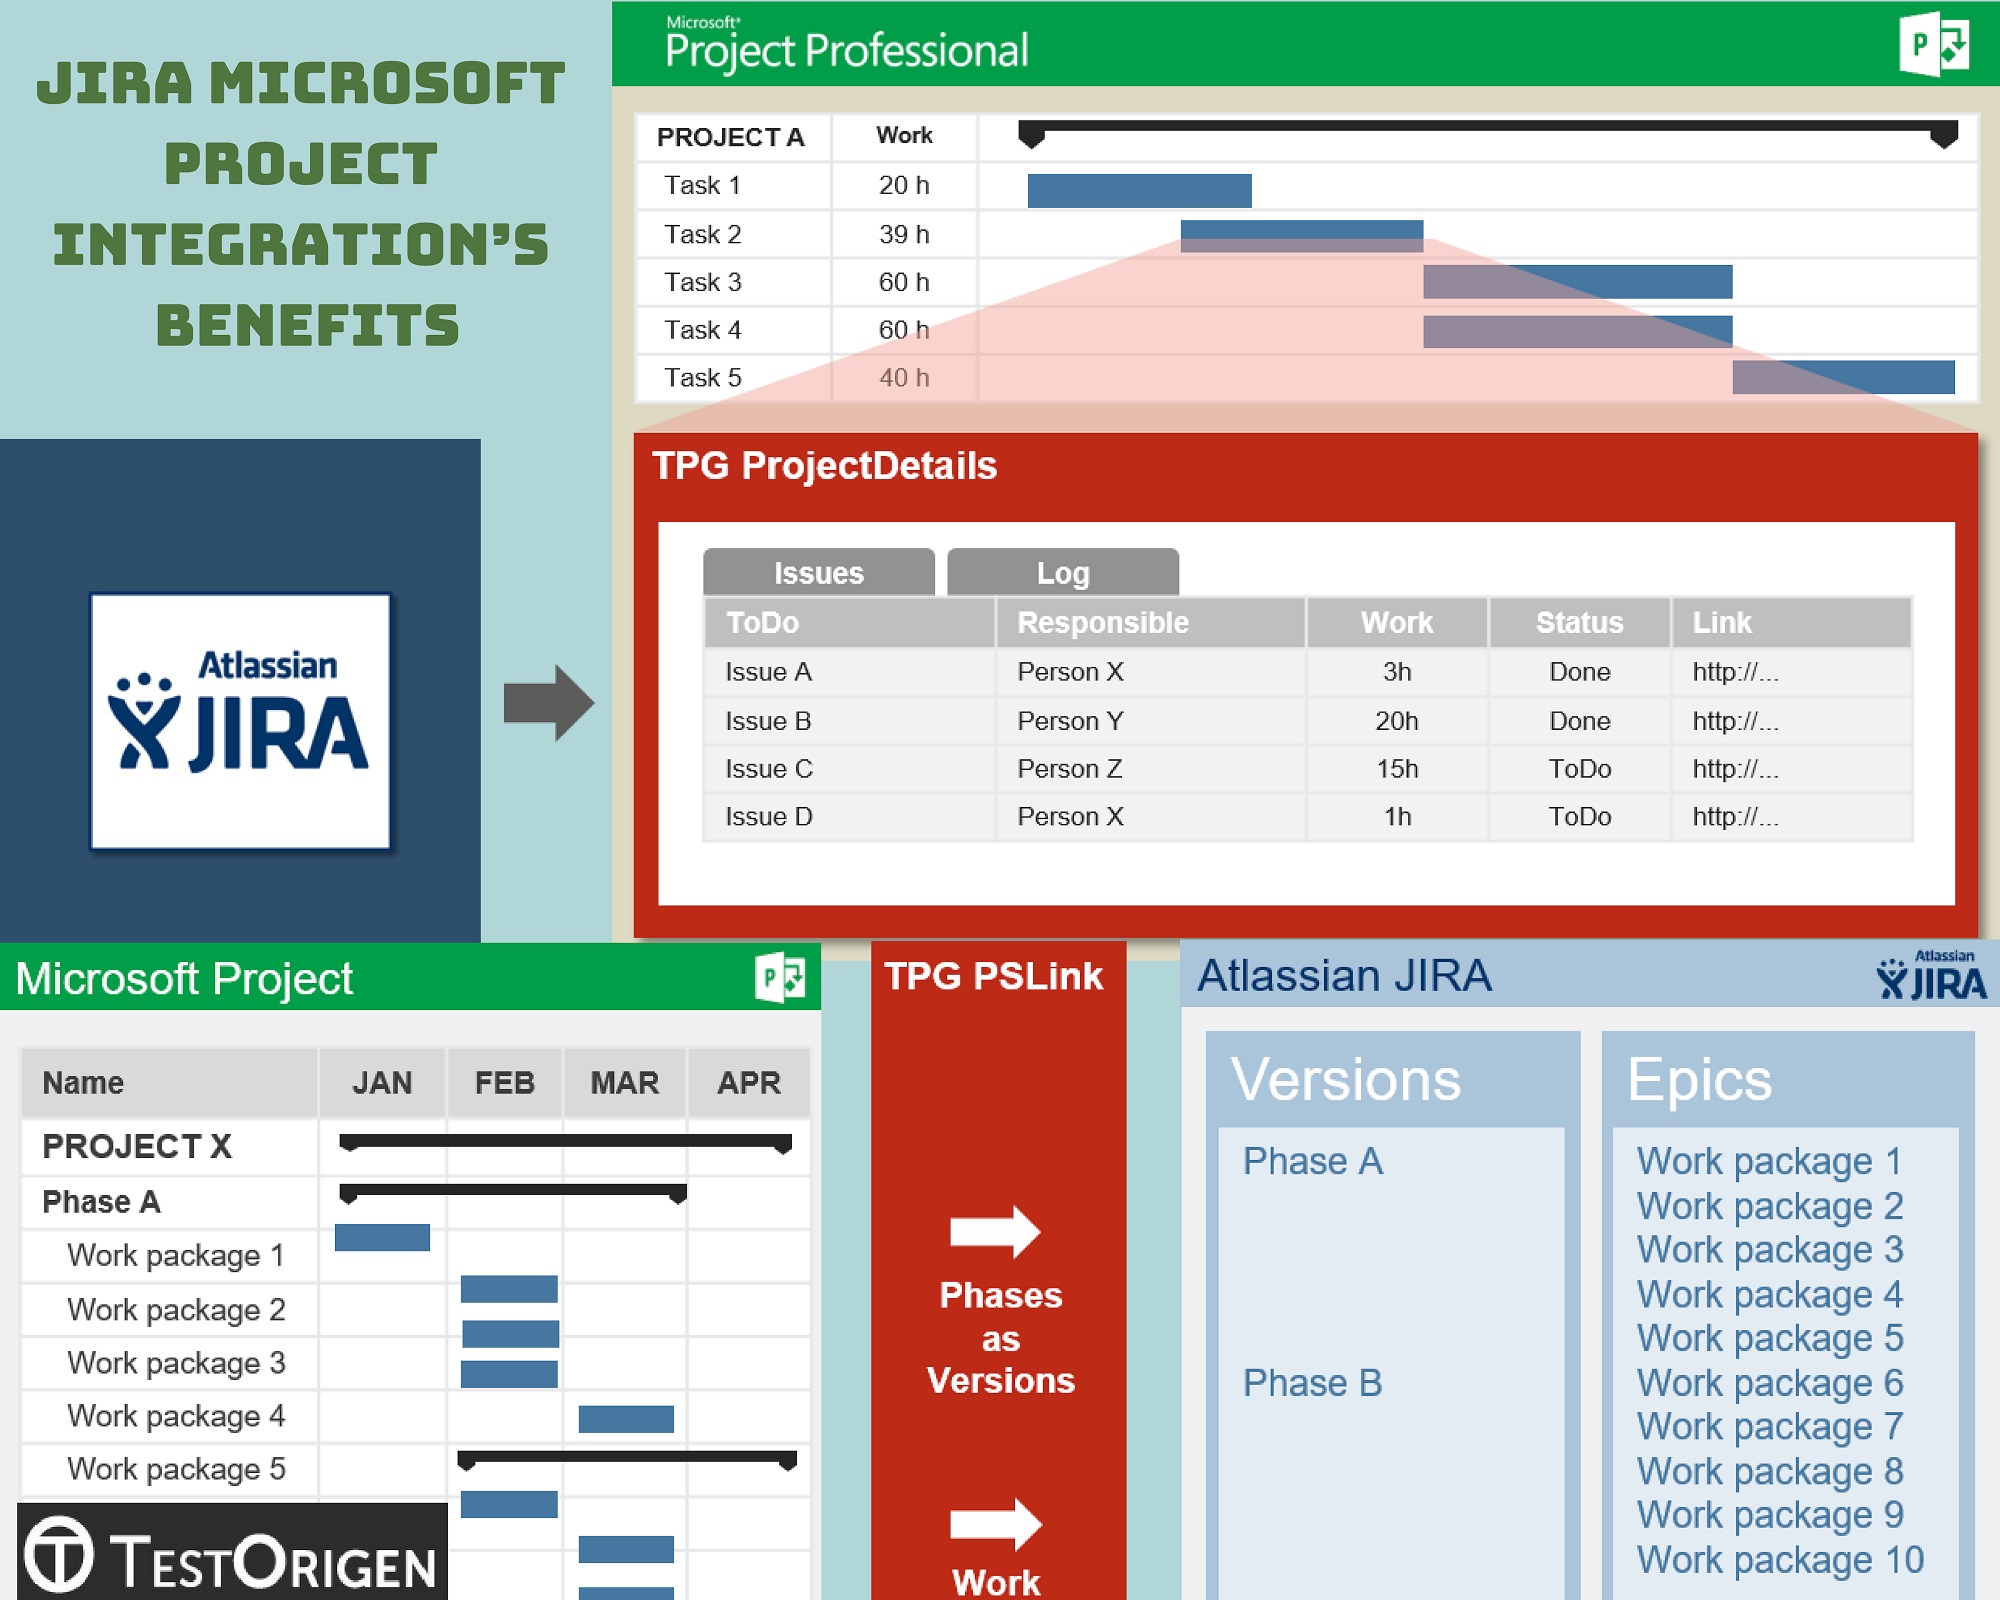 JIRA Microsoft Project Integration’s Benefits